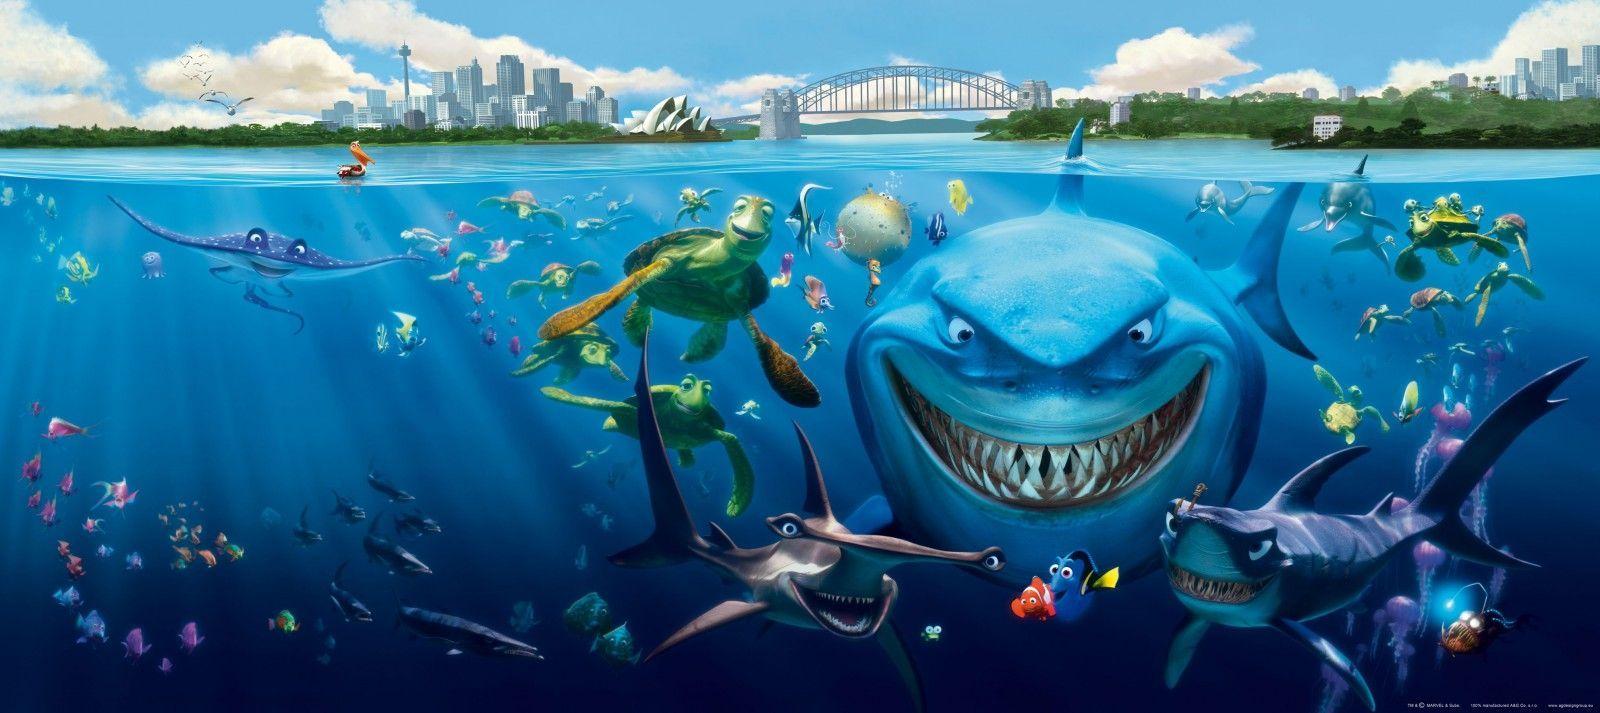 1600x713 Hình nền bức tranh tường bức tranh Finding Nemo 3 con cá mập Bruce Anchor & Chum ảnh 202 x 90 cm / 2,21 yd x 35,43 